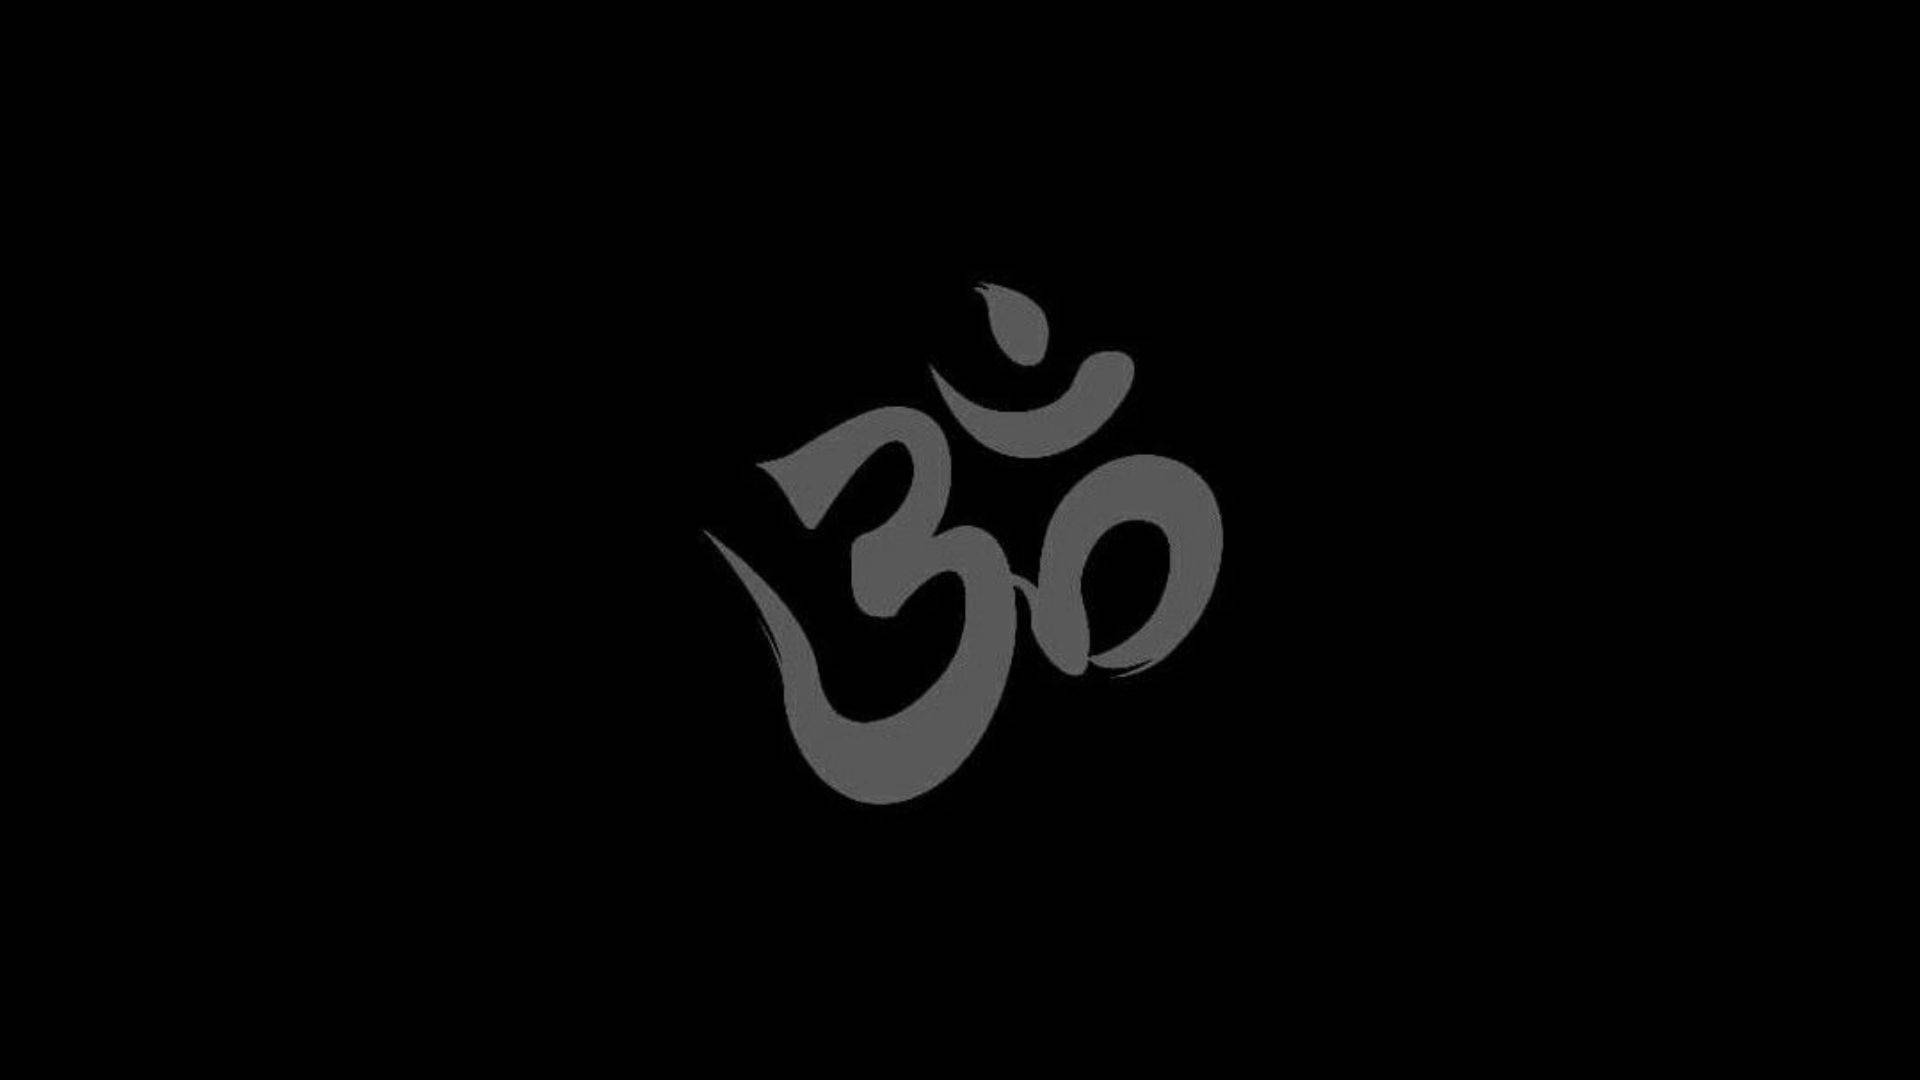 Dark Shiva Om Symbol Brush